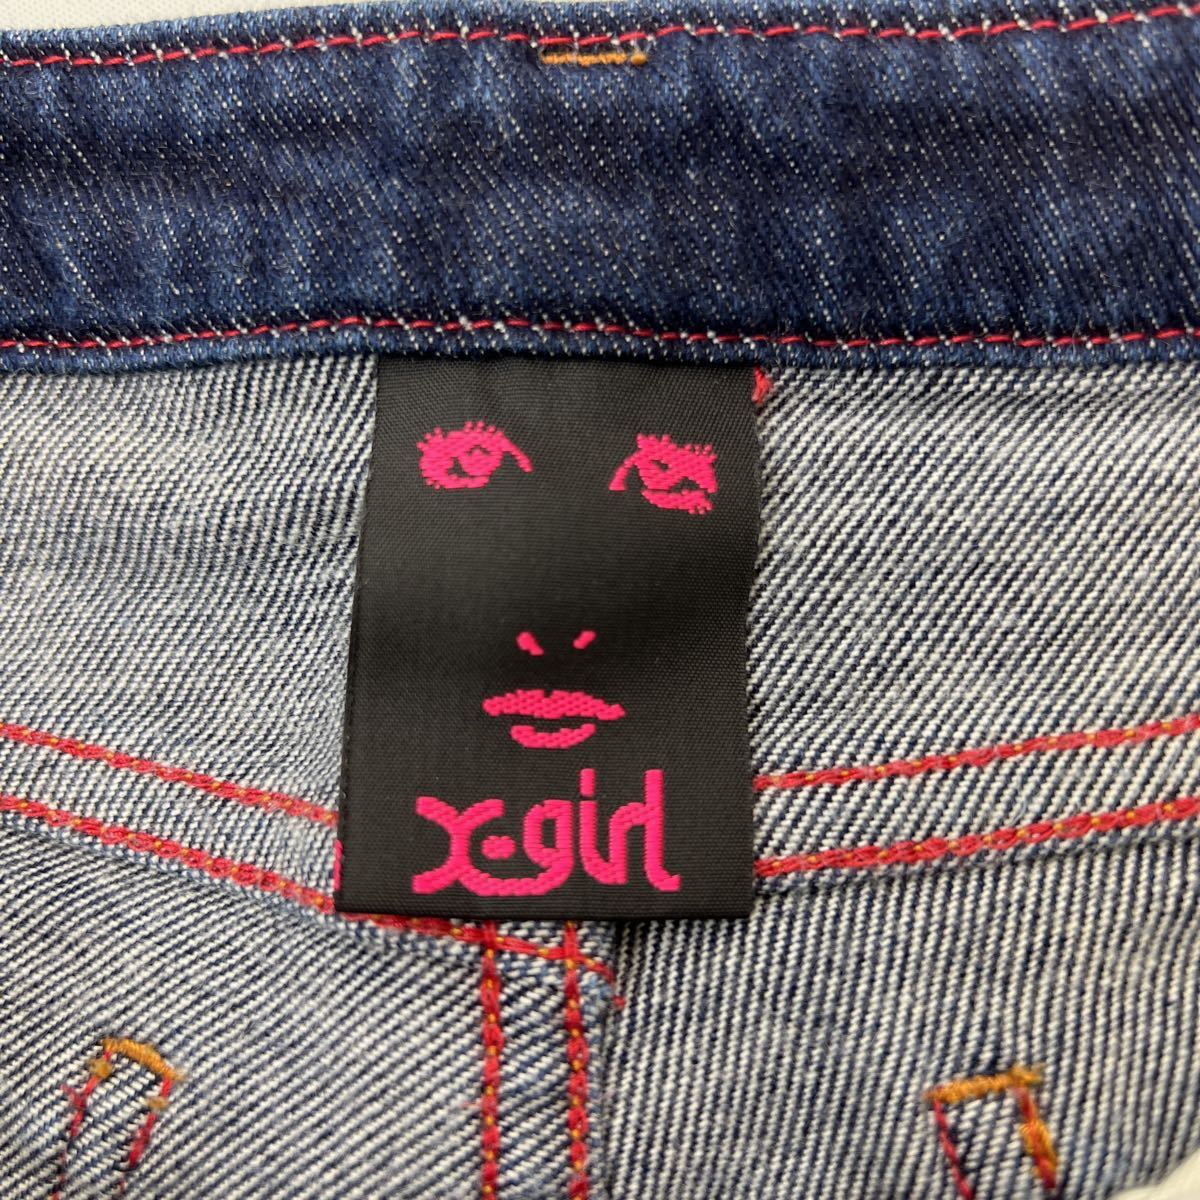  X-girl * X-girl тугой . Street стиль! обтягивающие джинсы брюки джинсы W26 цвет ... индиго надеты поворот выдающийся!#Ja5132